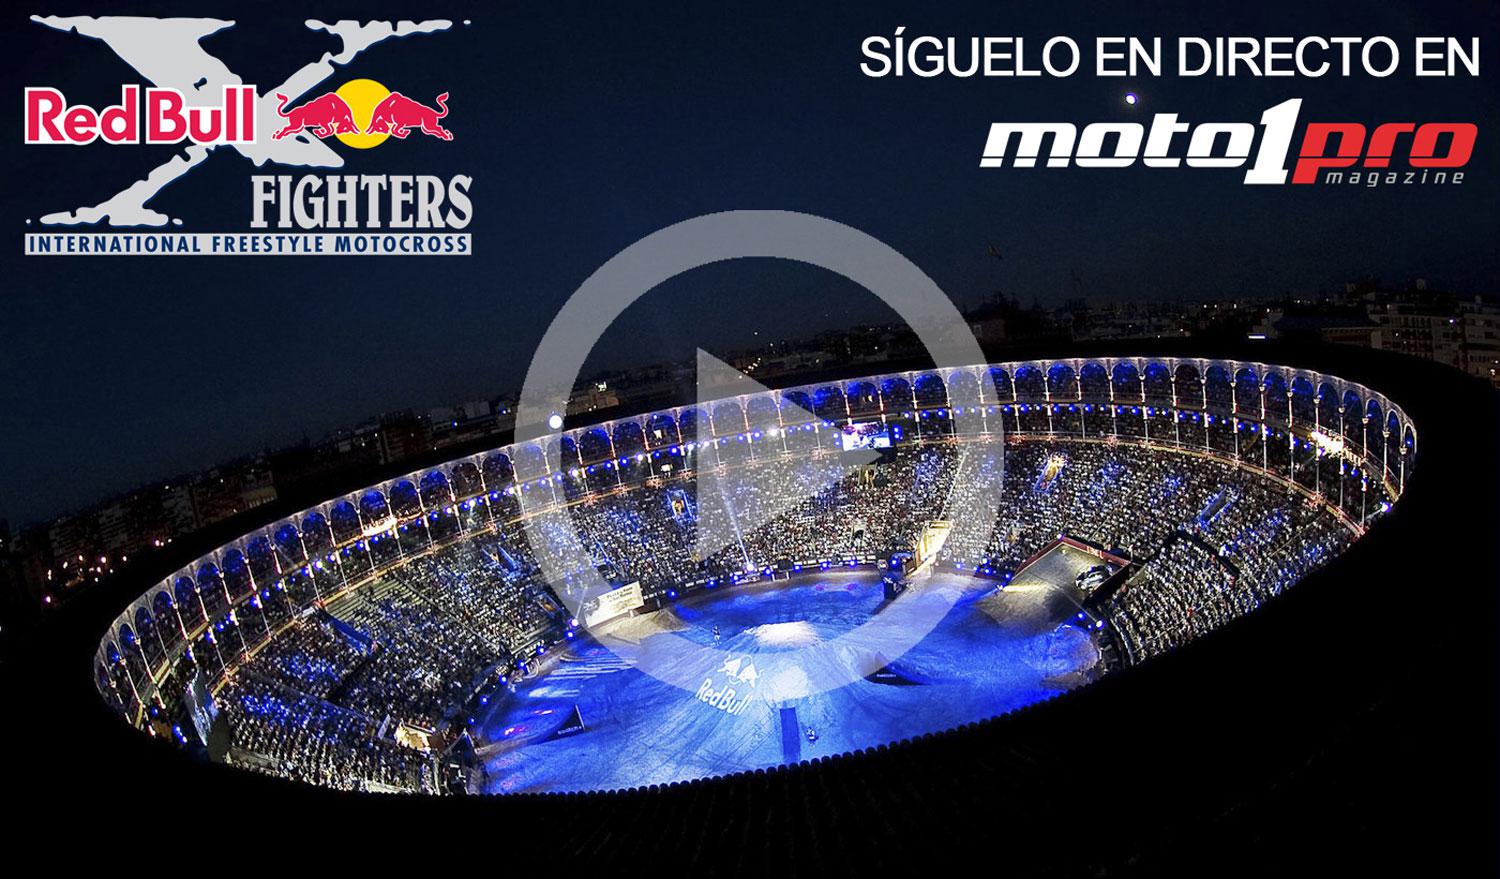 Red Bull X-Fighters en directo en Moto1Pro